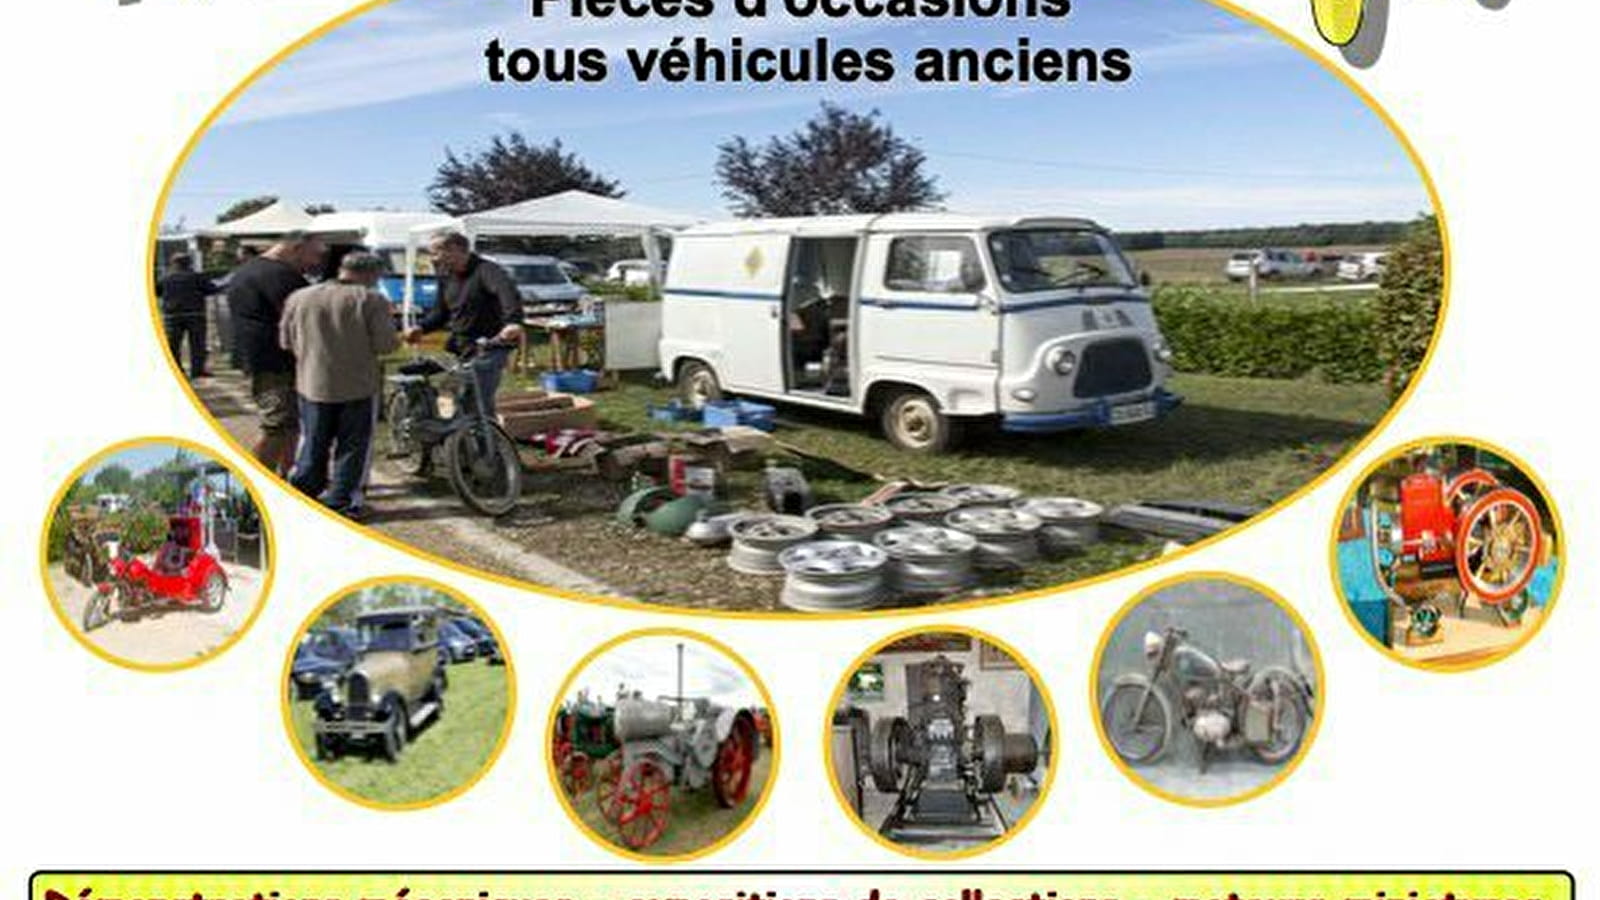 11 ème Bourse d'echange et exposition de véhicules anciens